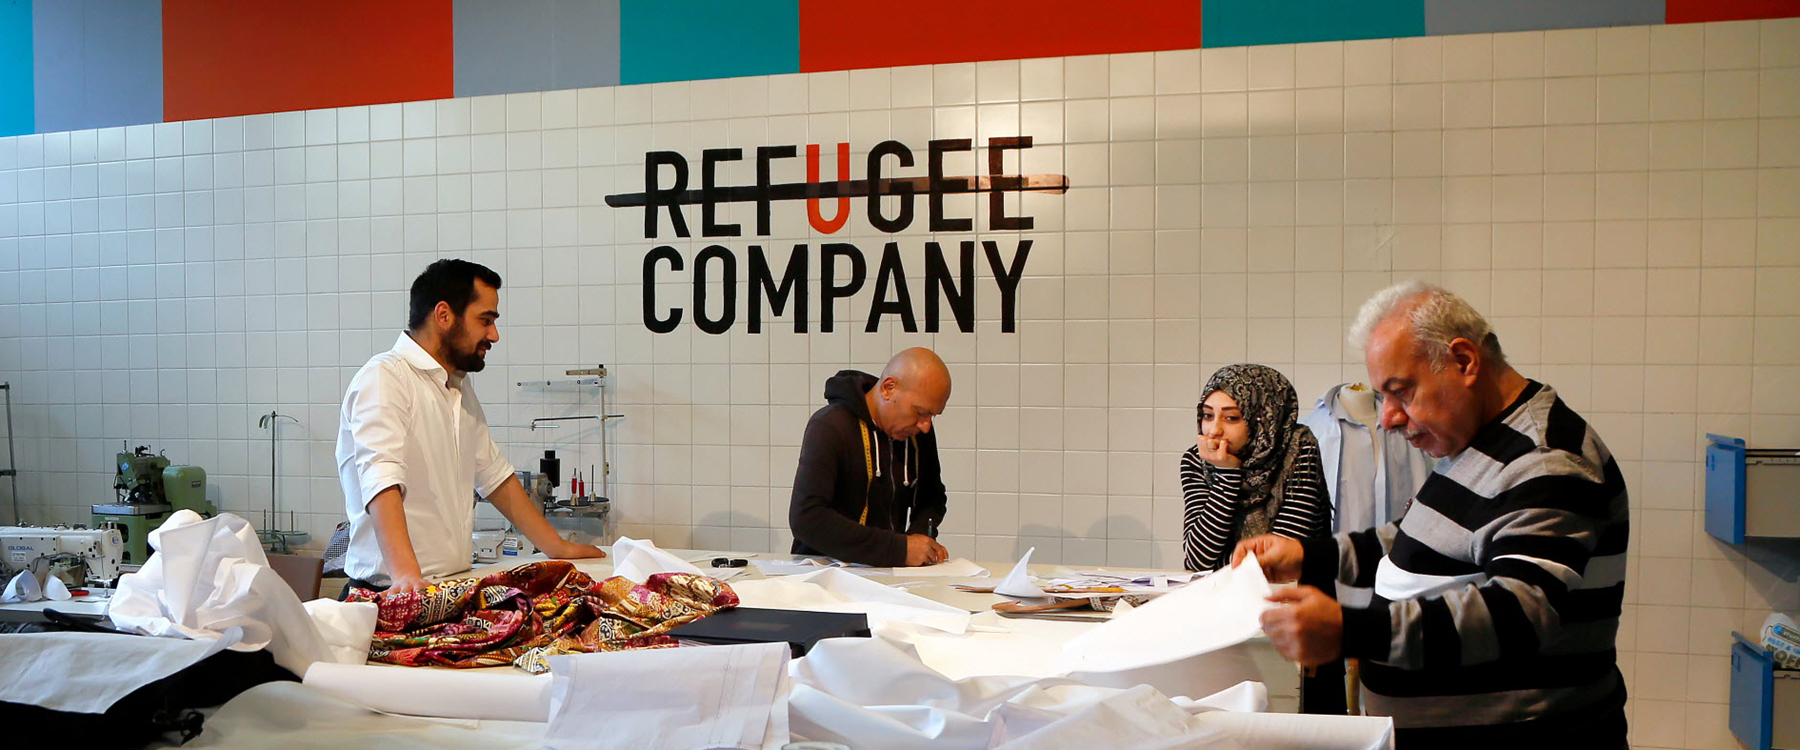 De voormalige Bijlmer Bajes in Amsterdam is nu een asielzoekerscentrum. Ook een organisatie als de Refugee Company is hier gevestigd, die asielzoekers onder meer leert kleding te maken. Foto: Kim van Dam | Nationale Beeldbank